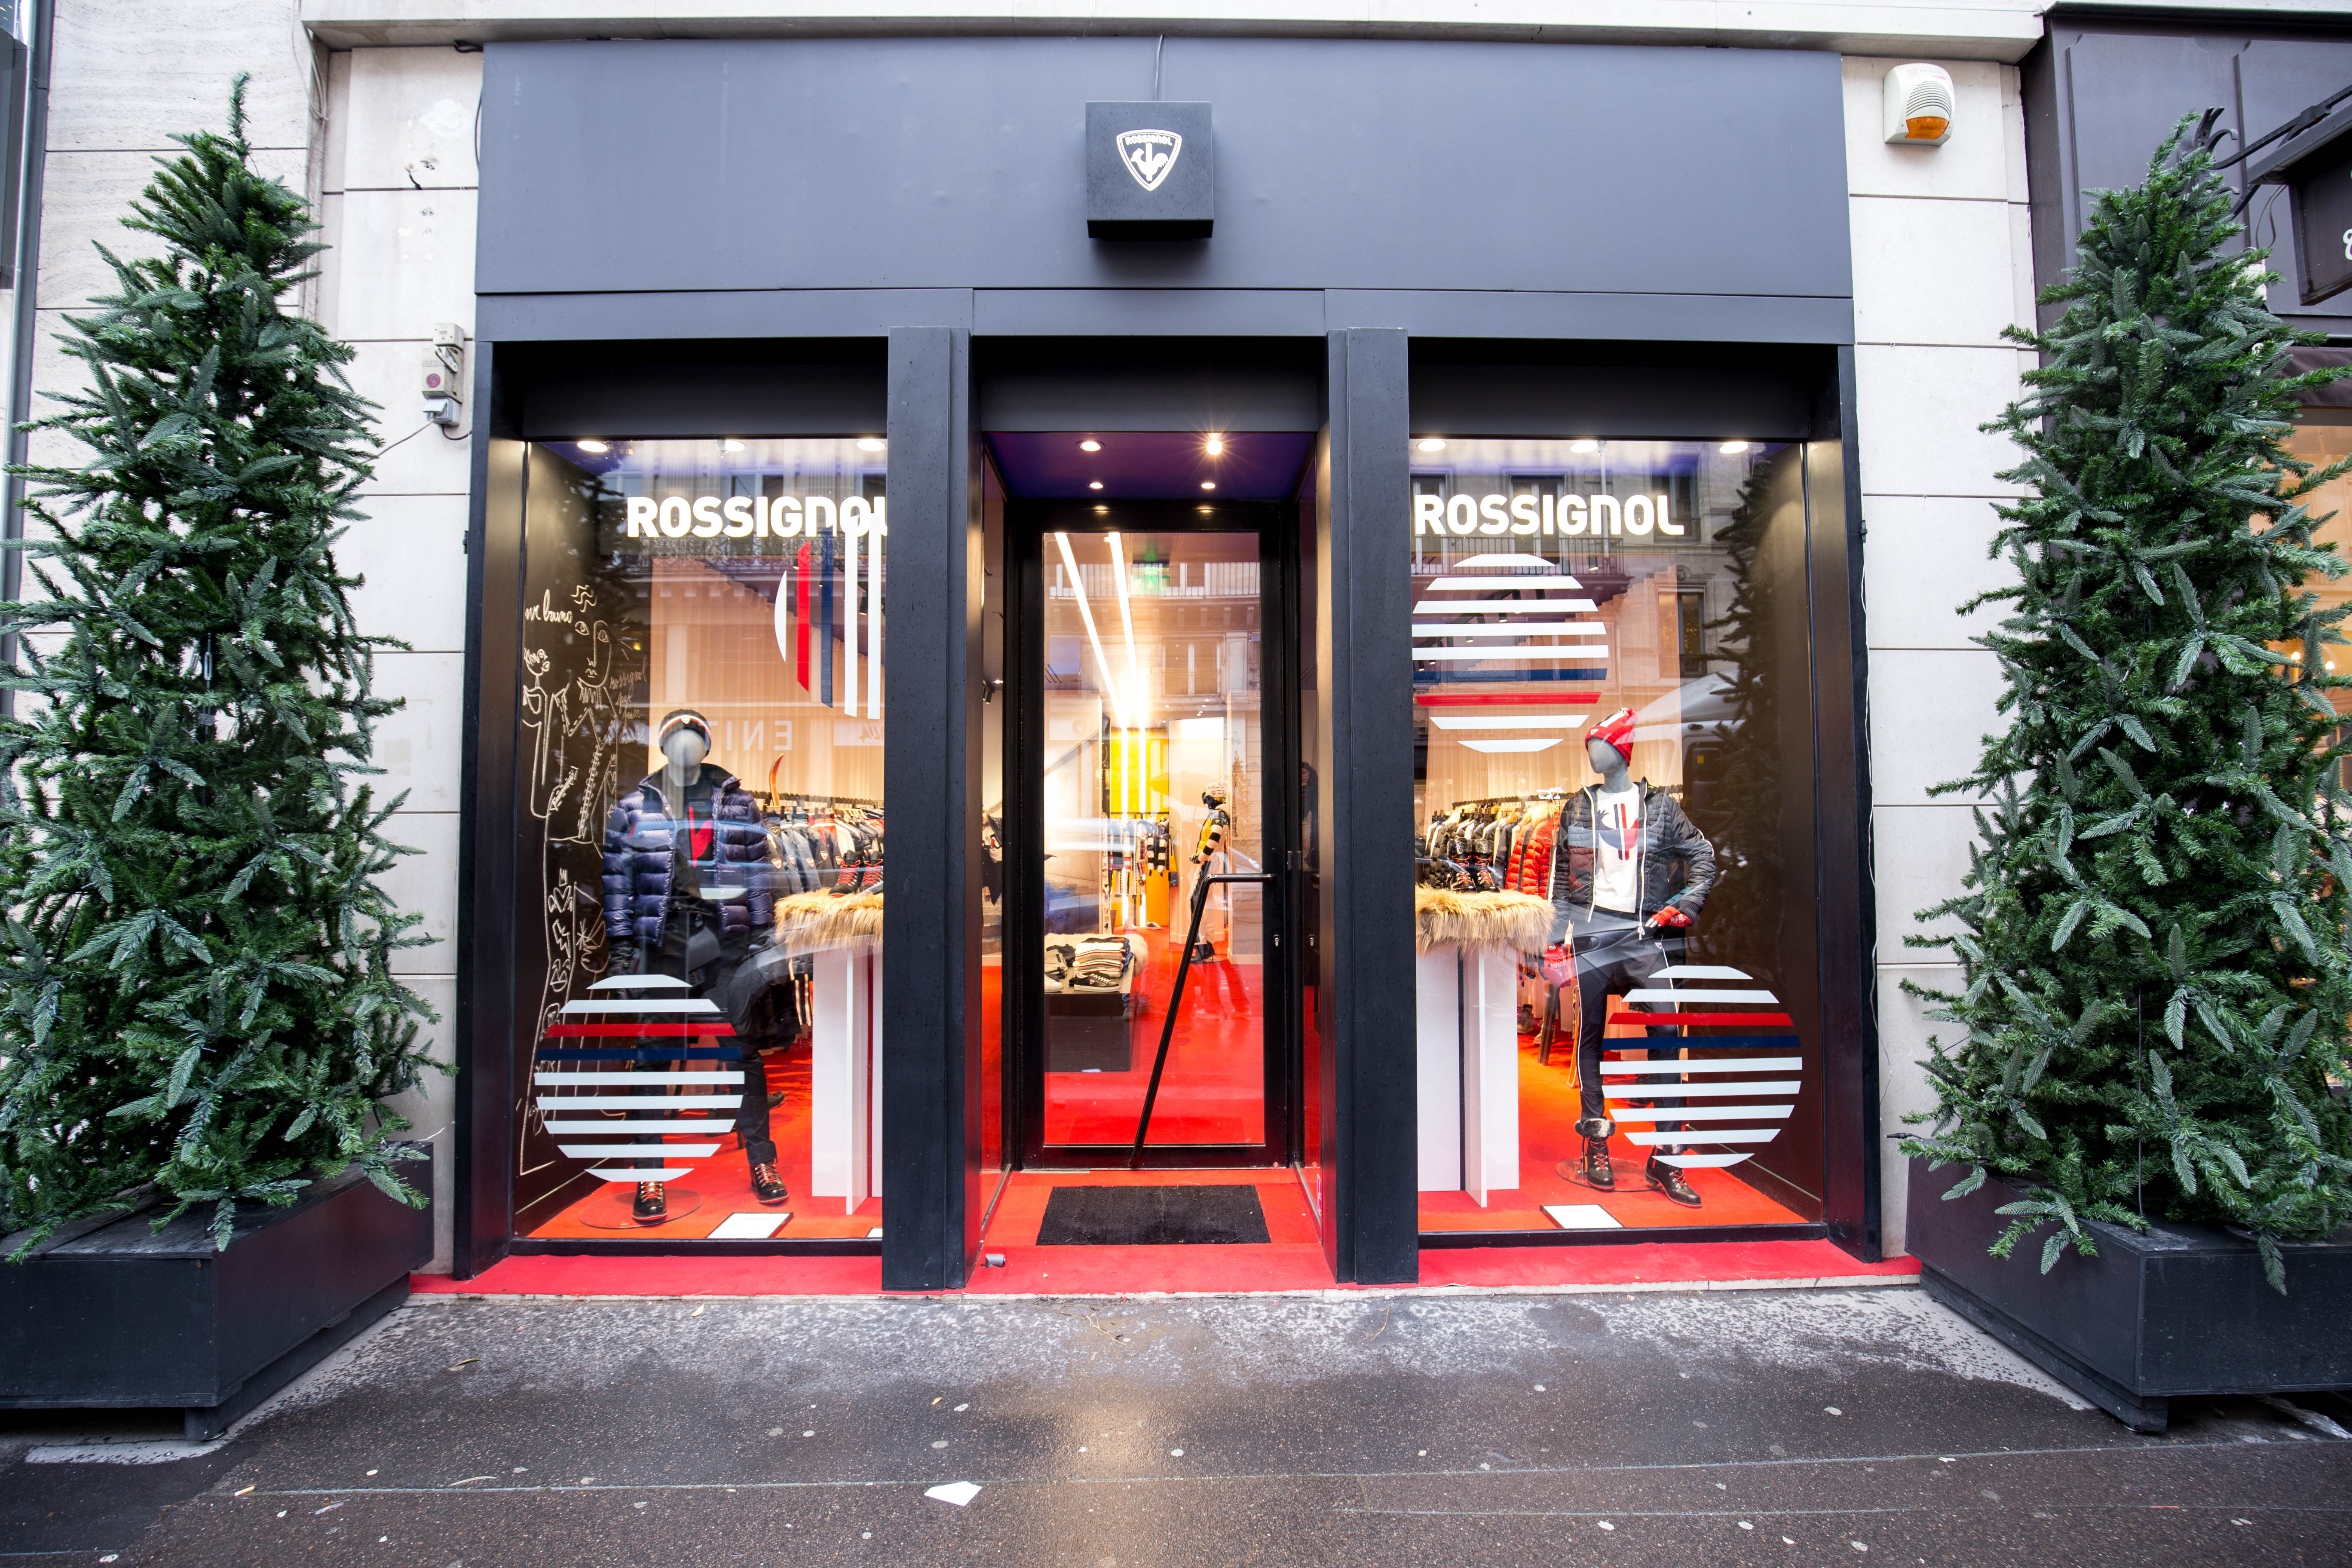 Le Pop-Up Store de Rossignol à Paris "le retail doit coexister l'offre e-commerce"